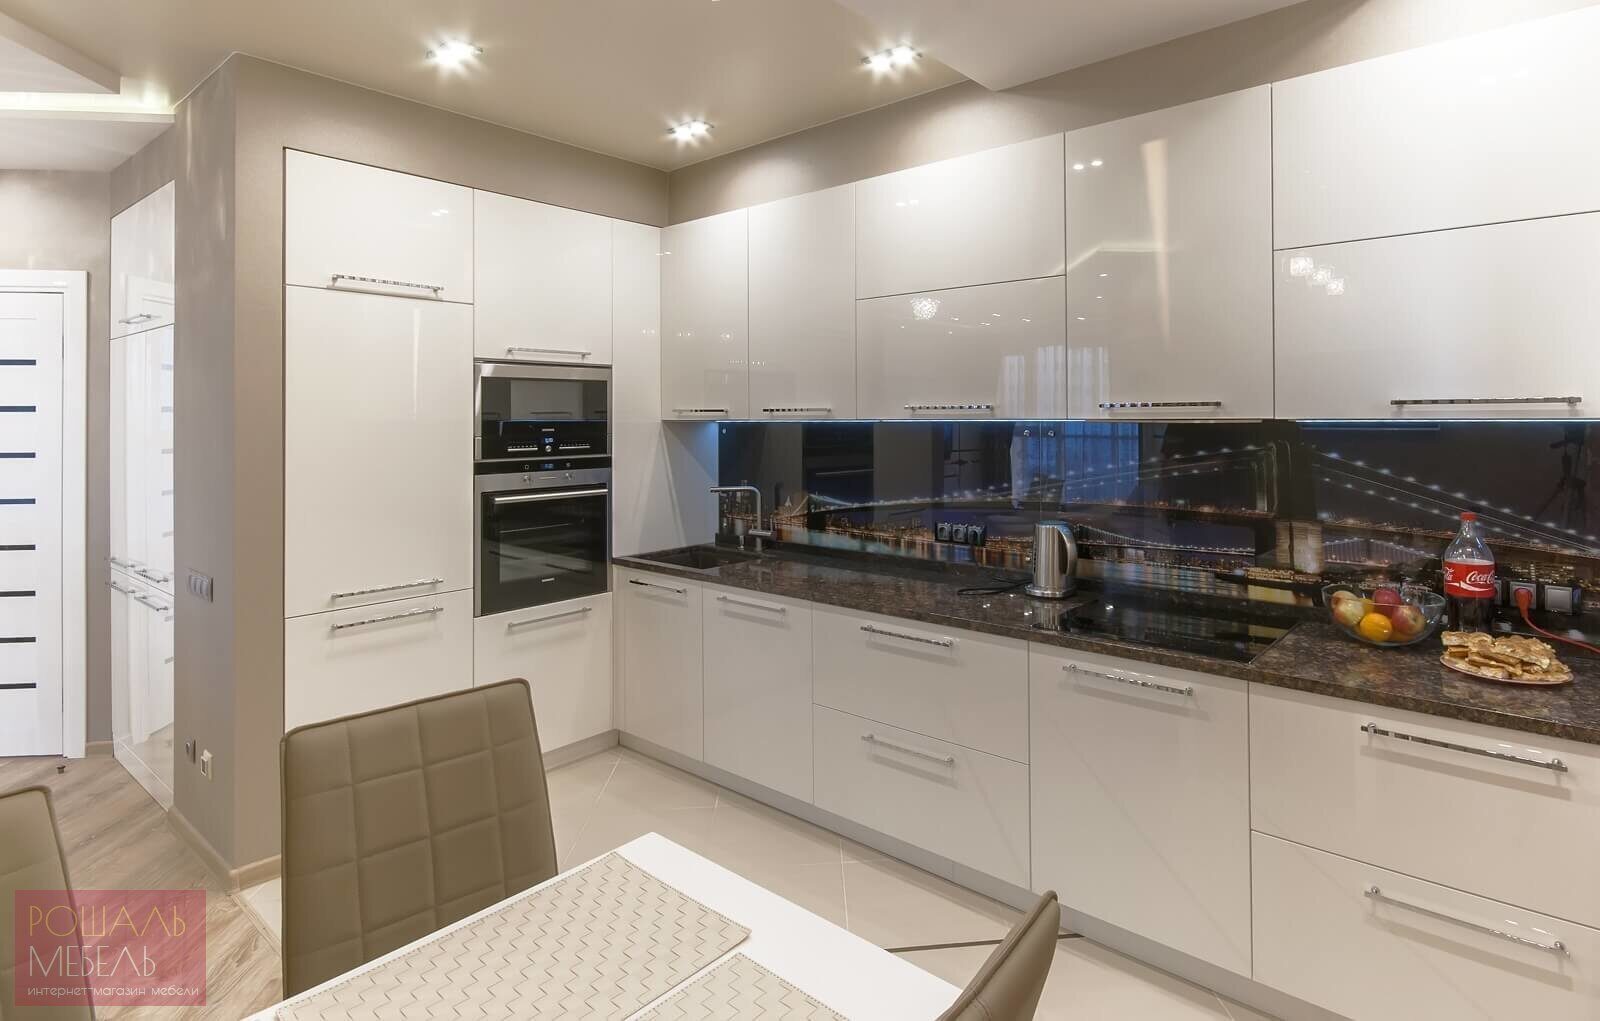 Какие виды дизайна кухни 8 метров квадратных в панельном доме? обзор и идеи +видео